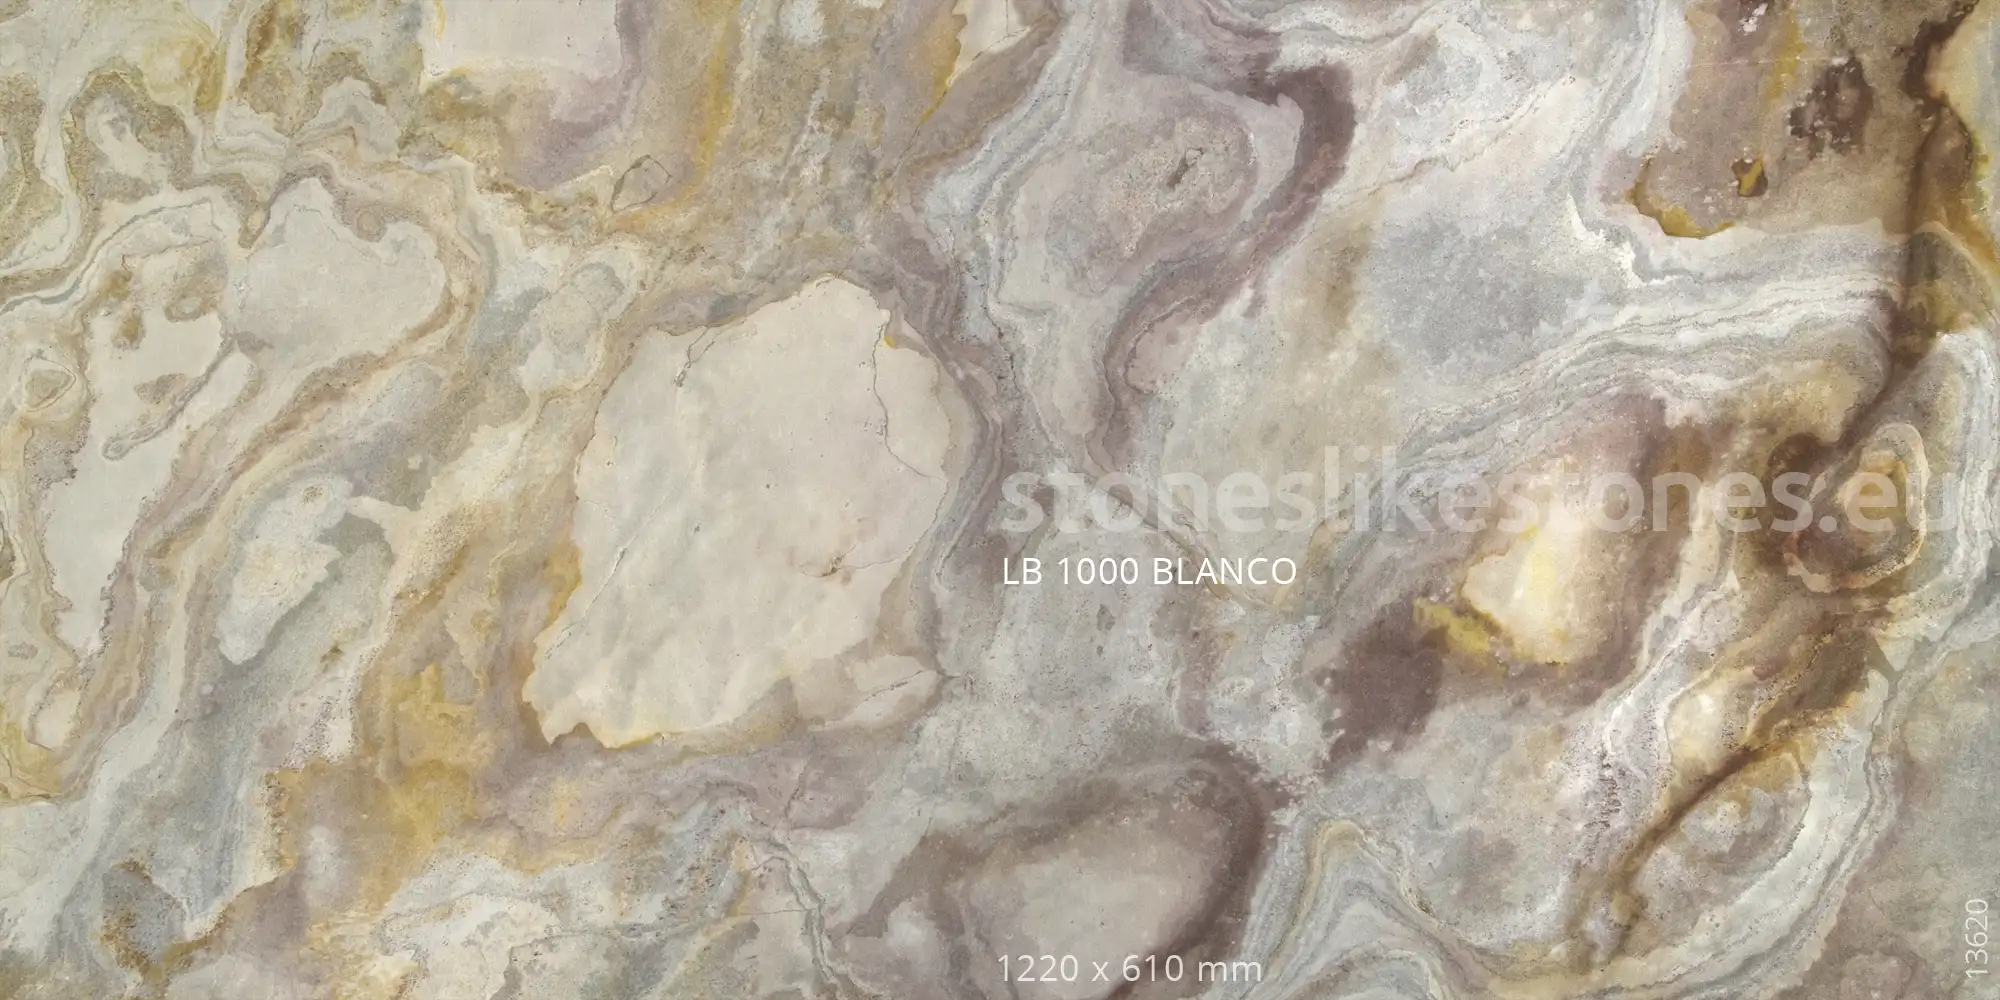 StoneslikeStones Dünnschiefer LB 1000 BLANCO Buntschiefer – Download mit Rechtsklick